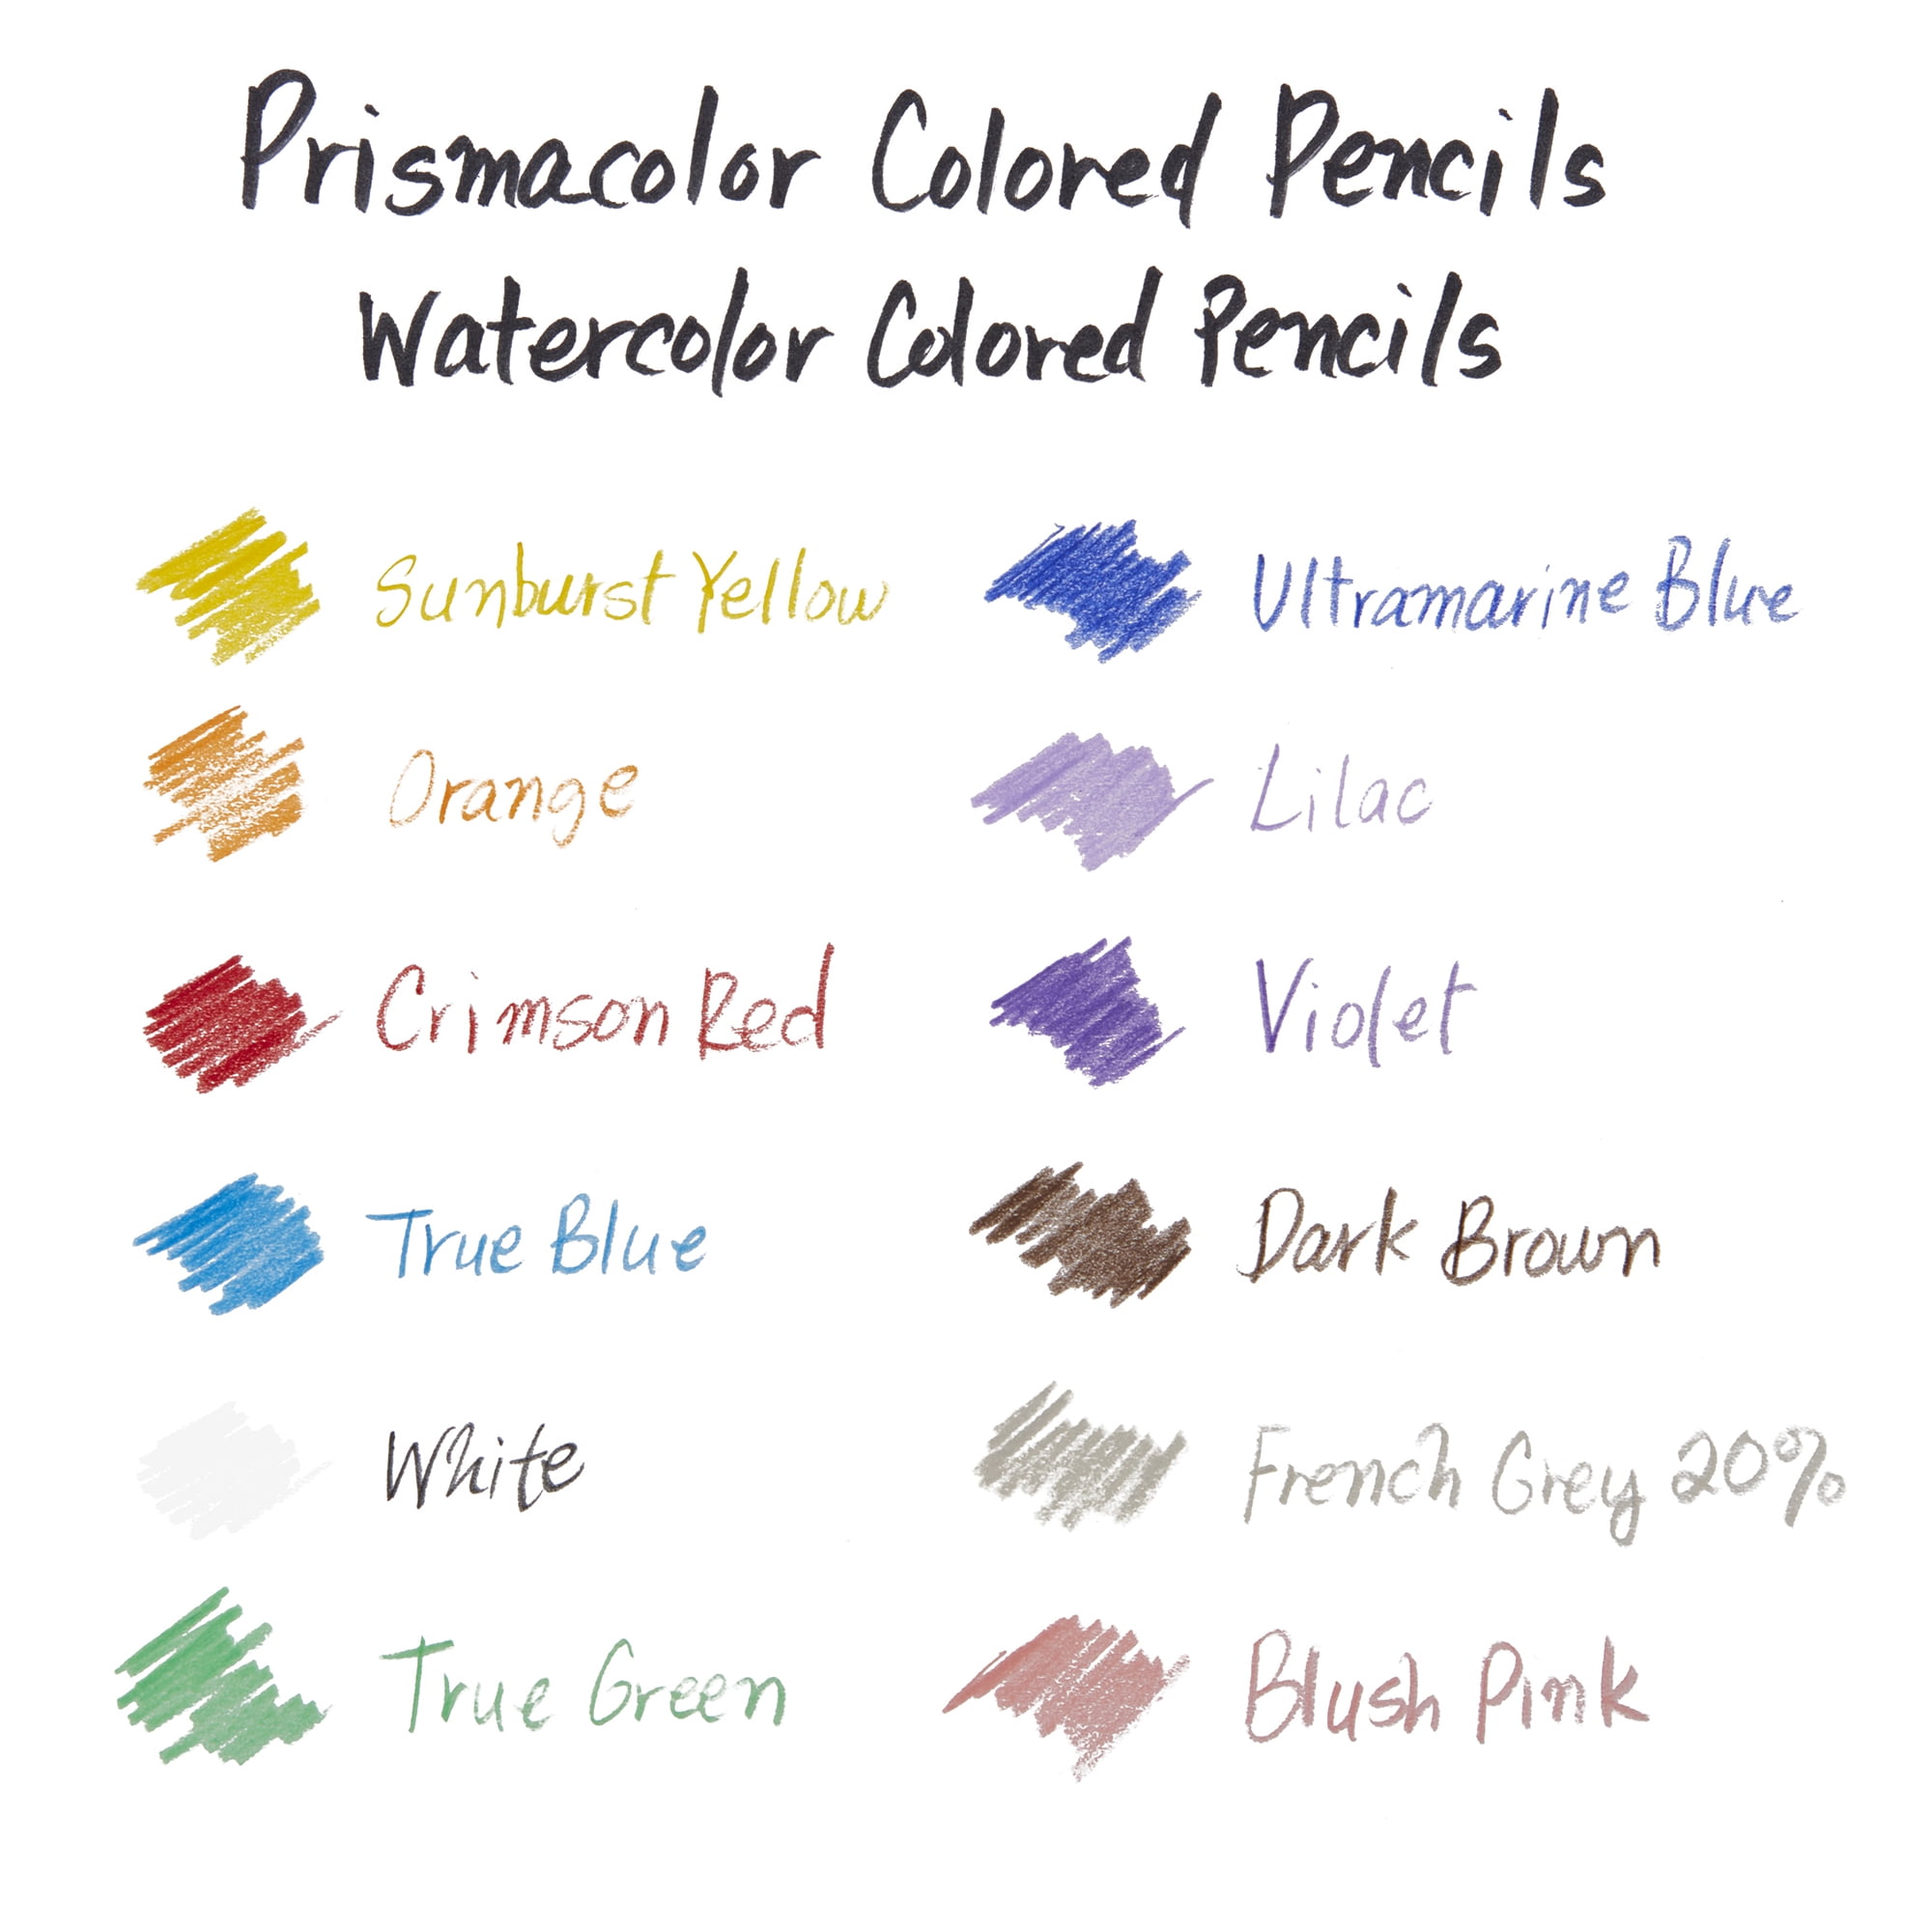 Prismacolor Watercolor Colored Pencil Set - 12 pack